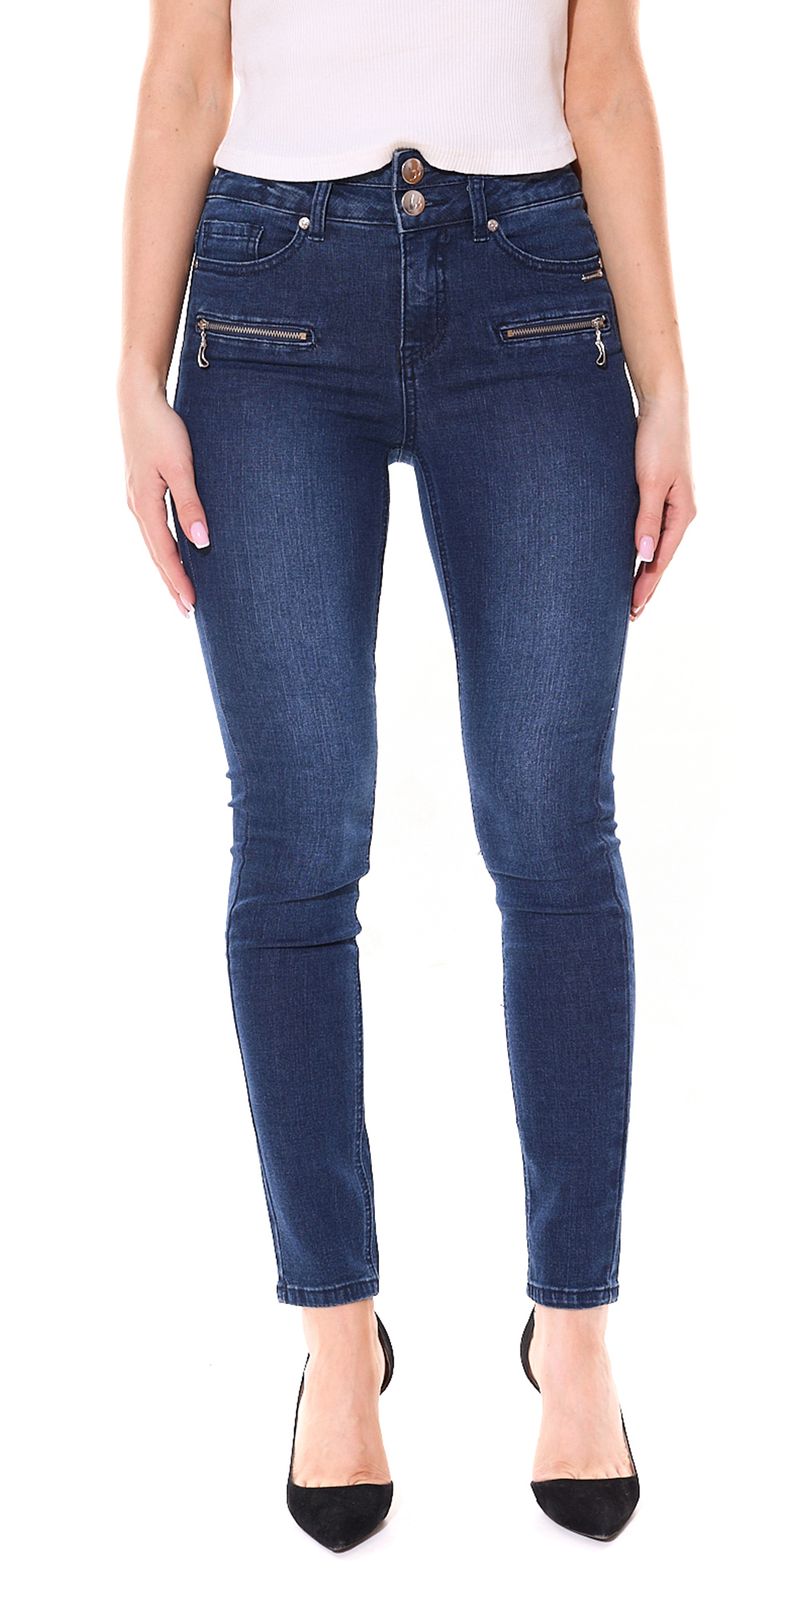 bruno banani Damen Slim-Fit Jeans nachhaltige Röhrenhose High Waist 5-Pocket 24172654 Blau von bruno banani